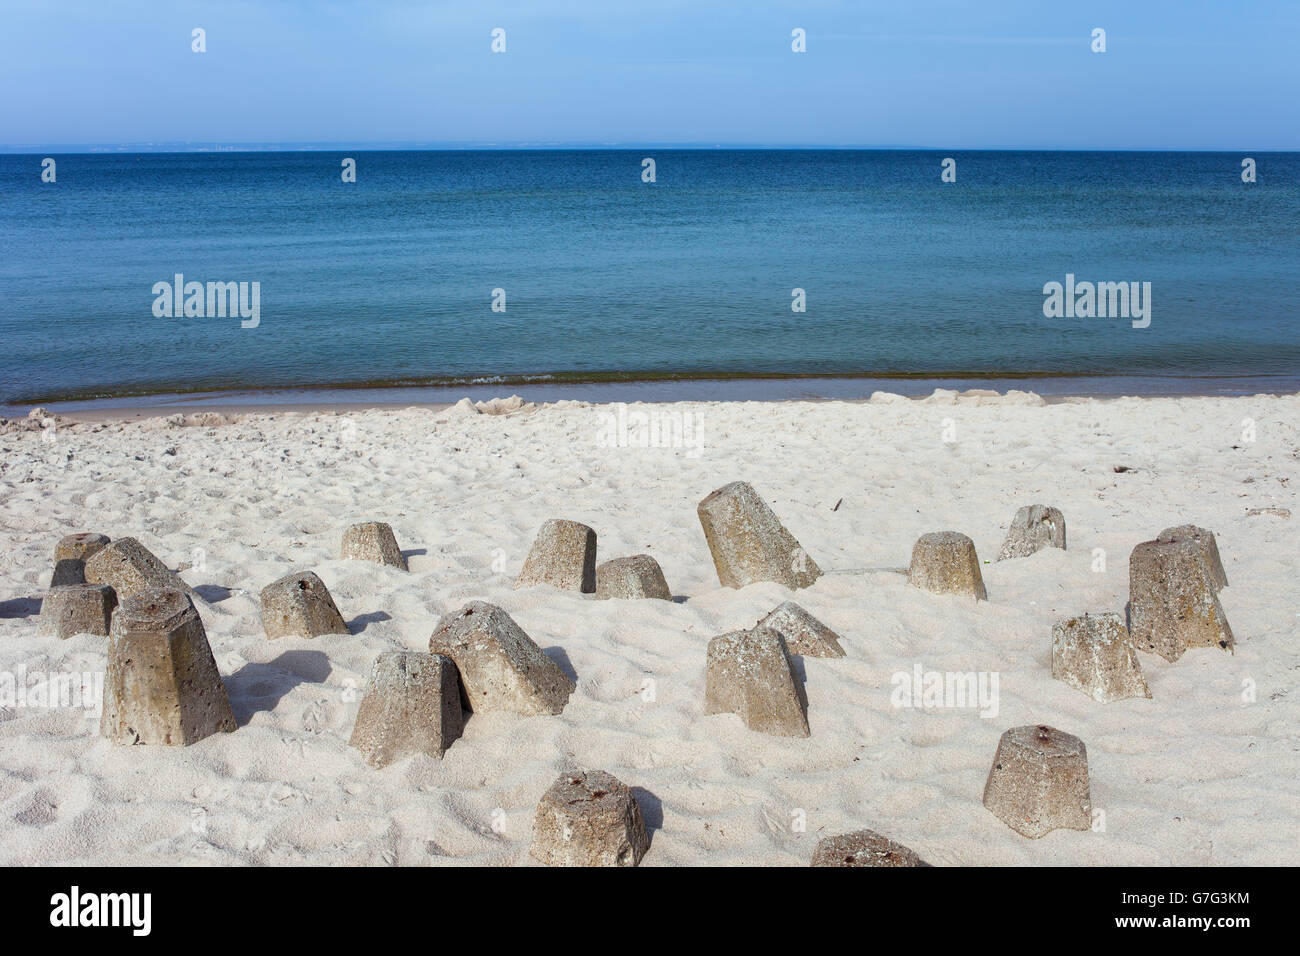 La sabbia bianca del Mar Baltico spiaggia con calcestruzzo blocchi frangiflutti a Penisola di Hel in Polonia, vista verso la Baia di Puck Foto Stock